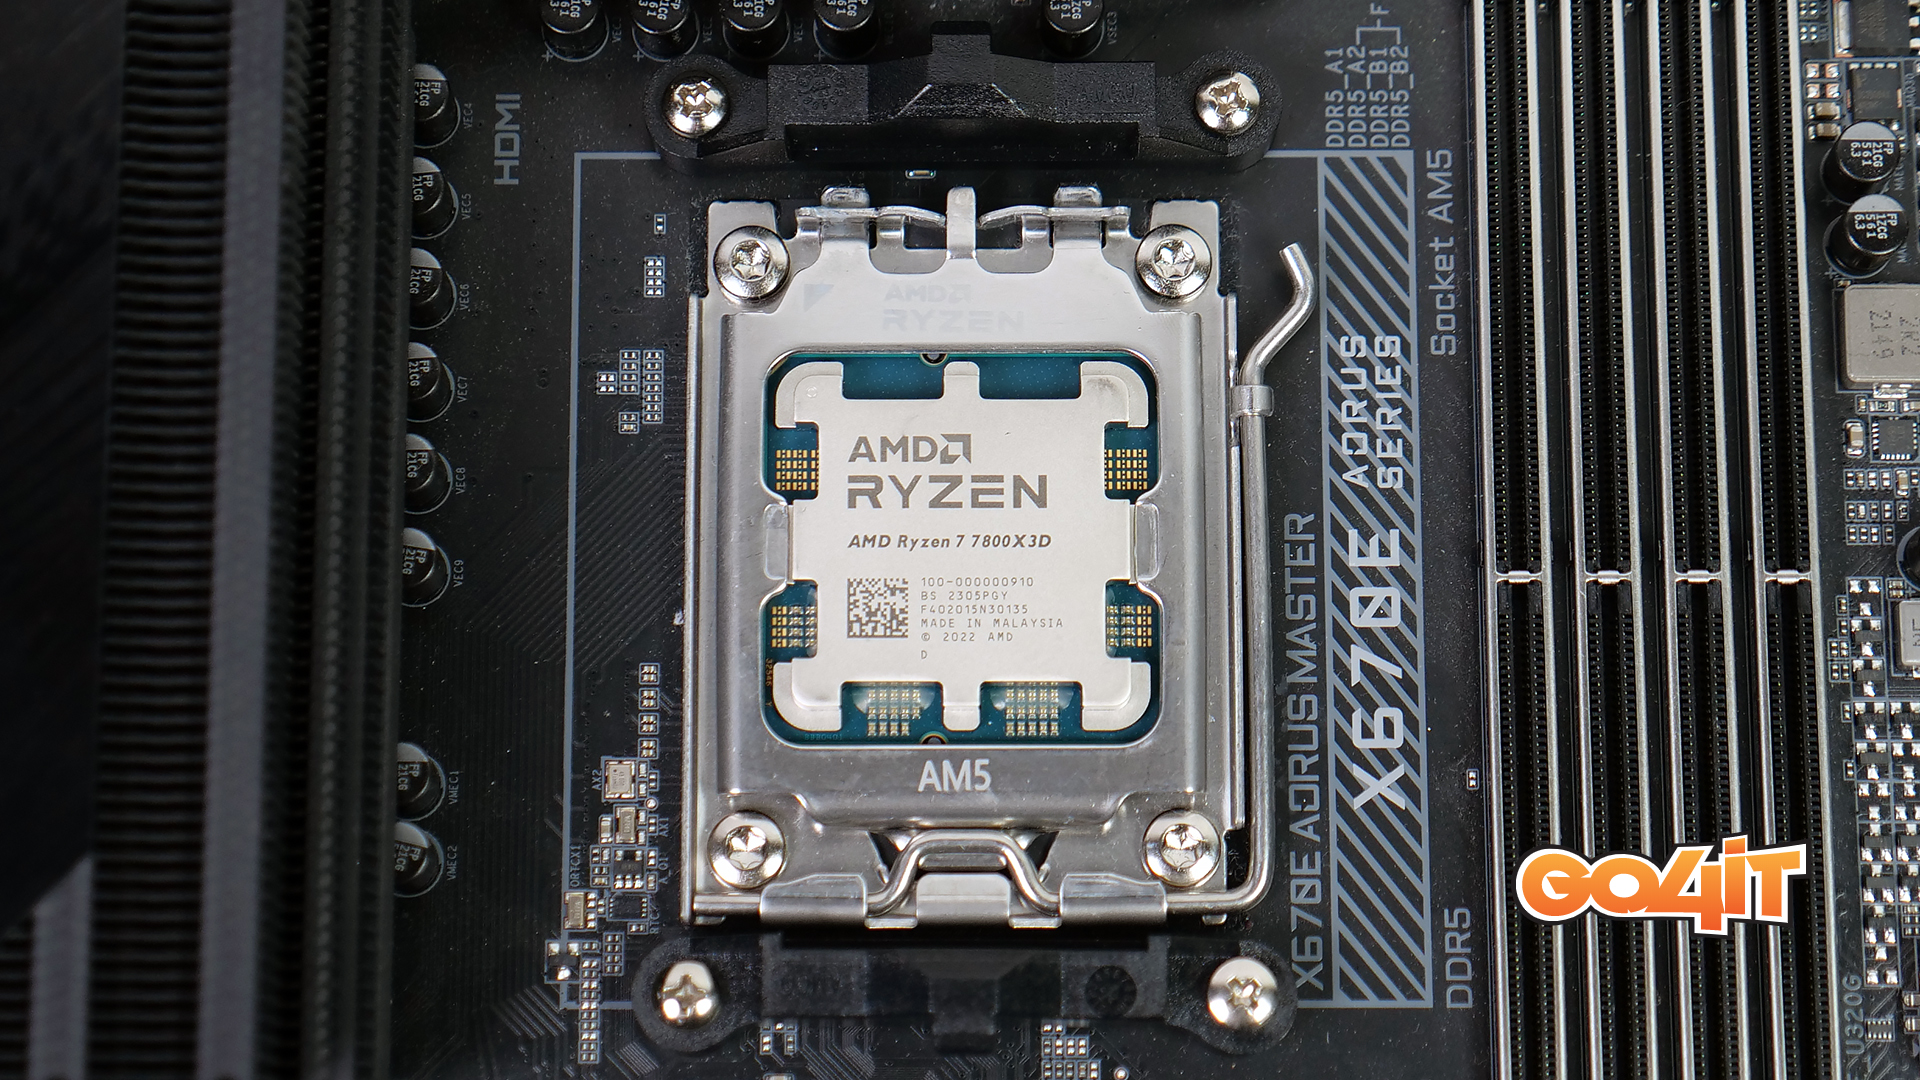 Ryzen 7 7800X3D in socket